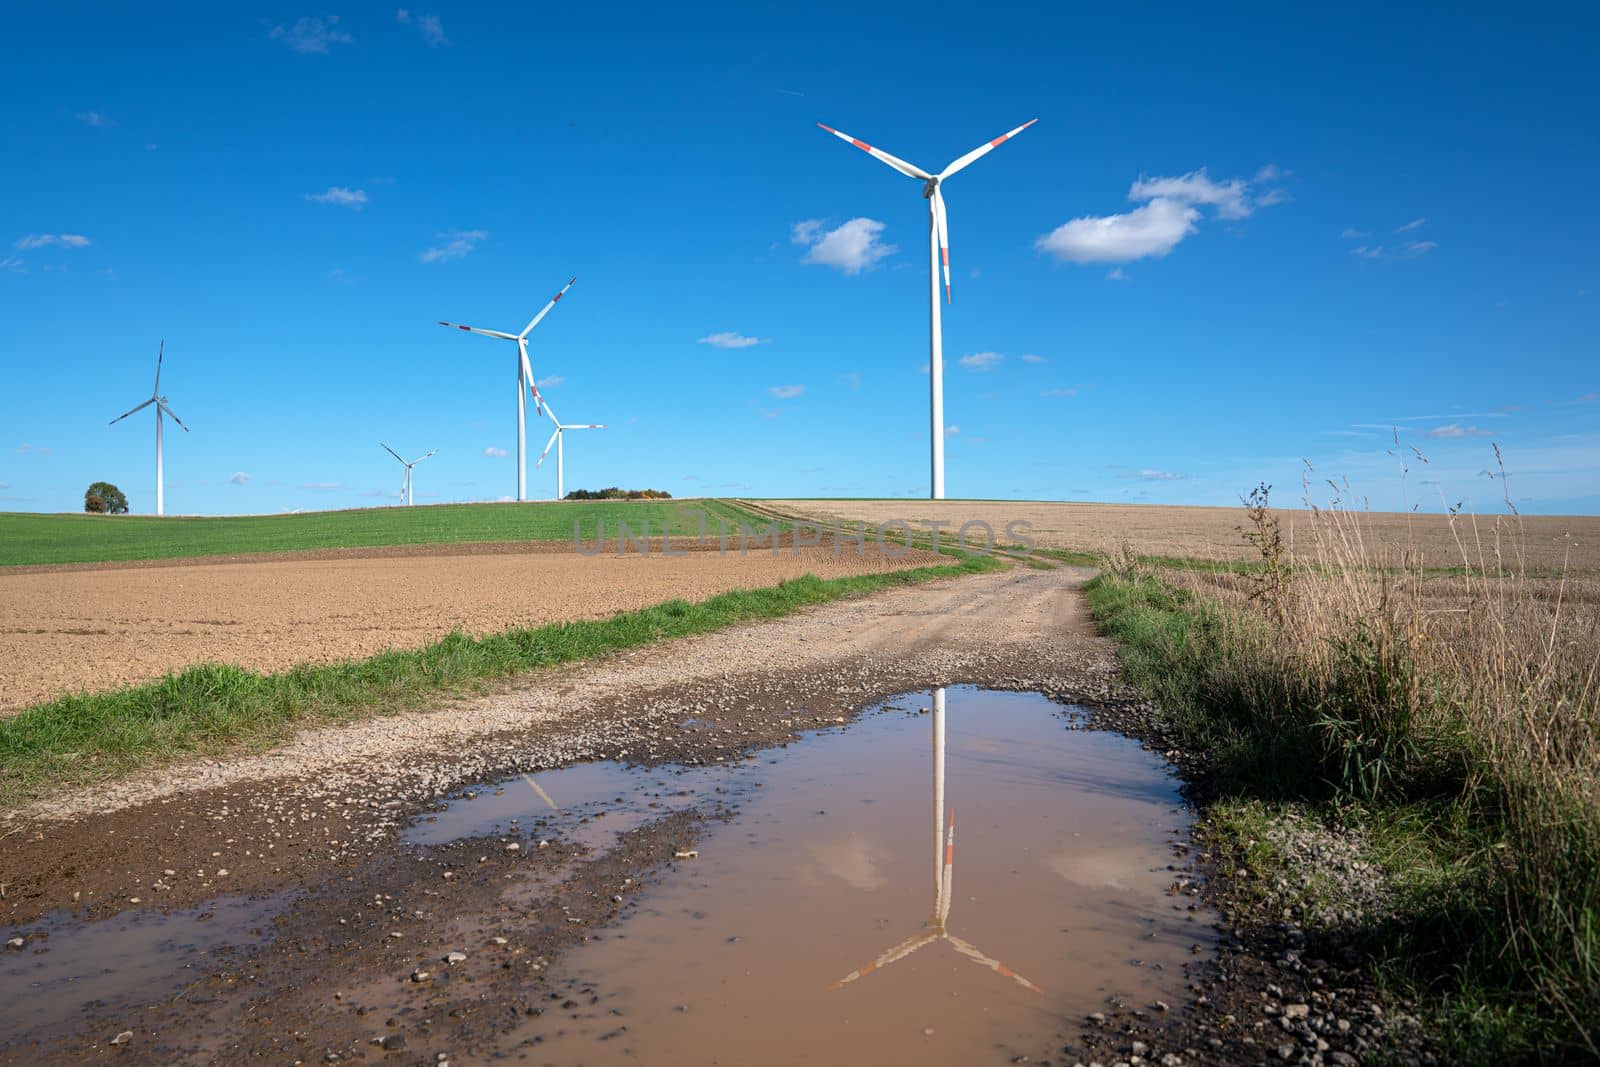 Wind farm, Eifel, Germany by alfotokunst